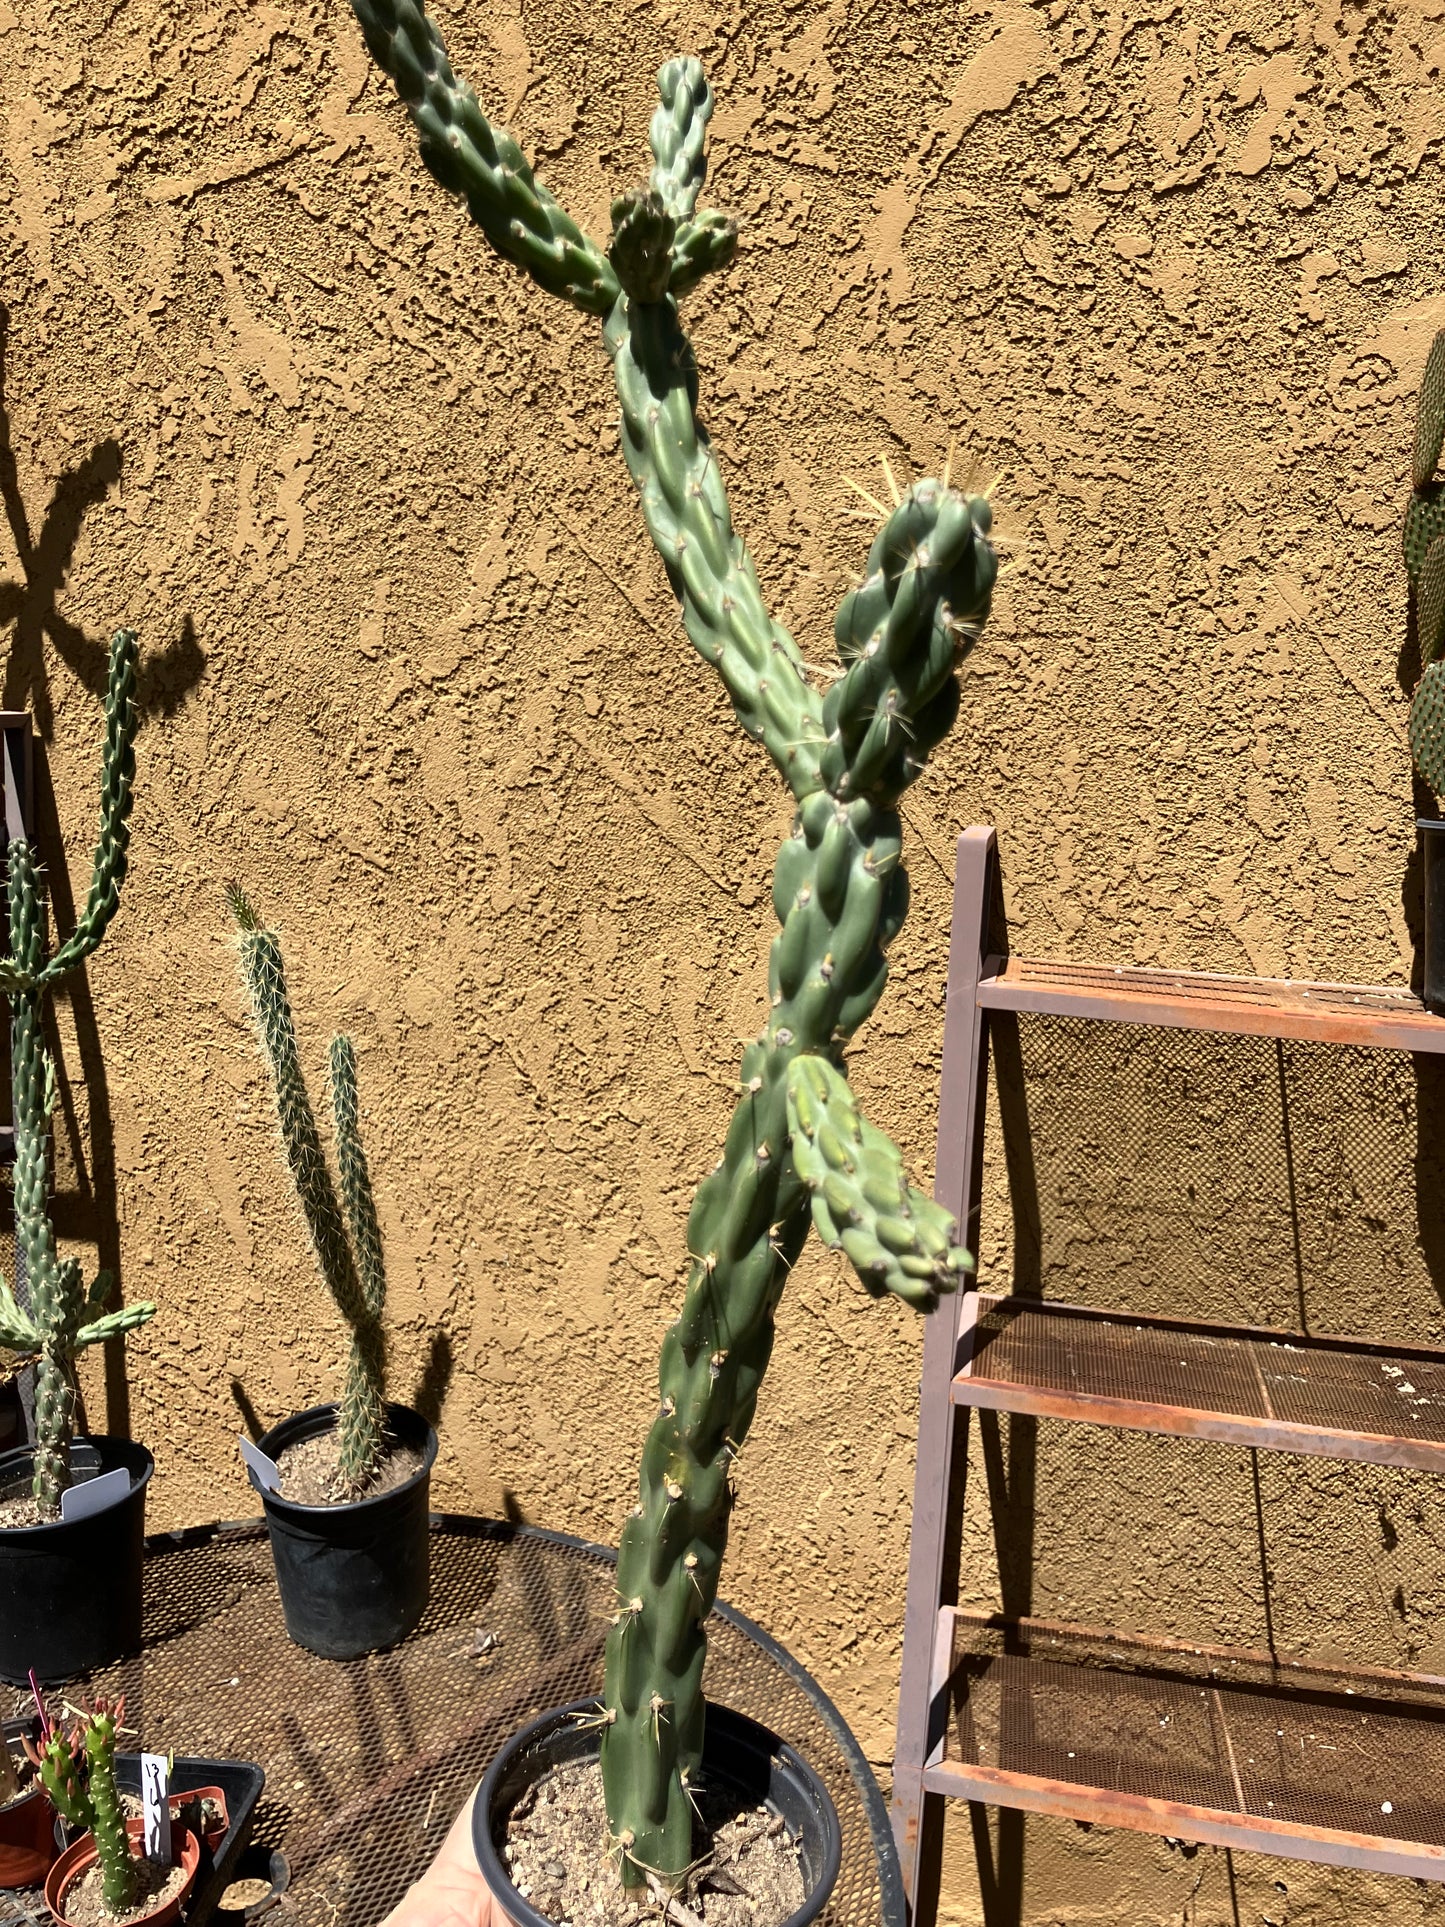 Cholla Cylindropuntia Imbricata Buckhorn Cactus 23"Tall #23P